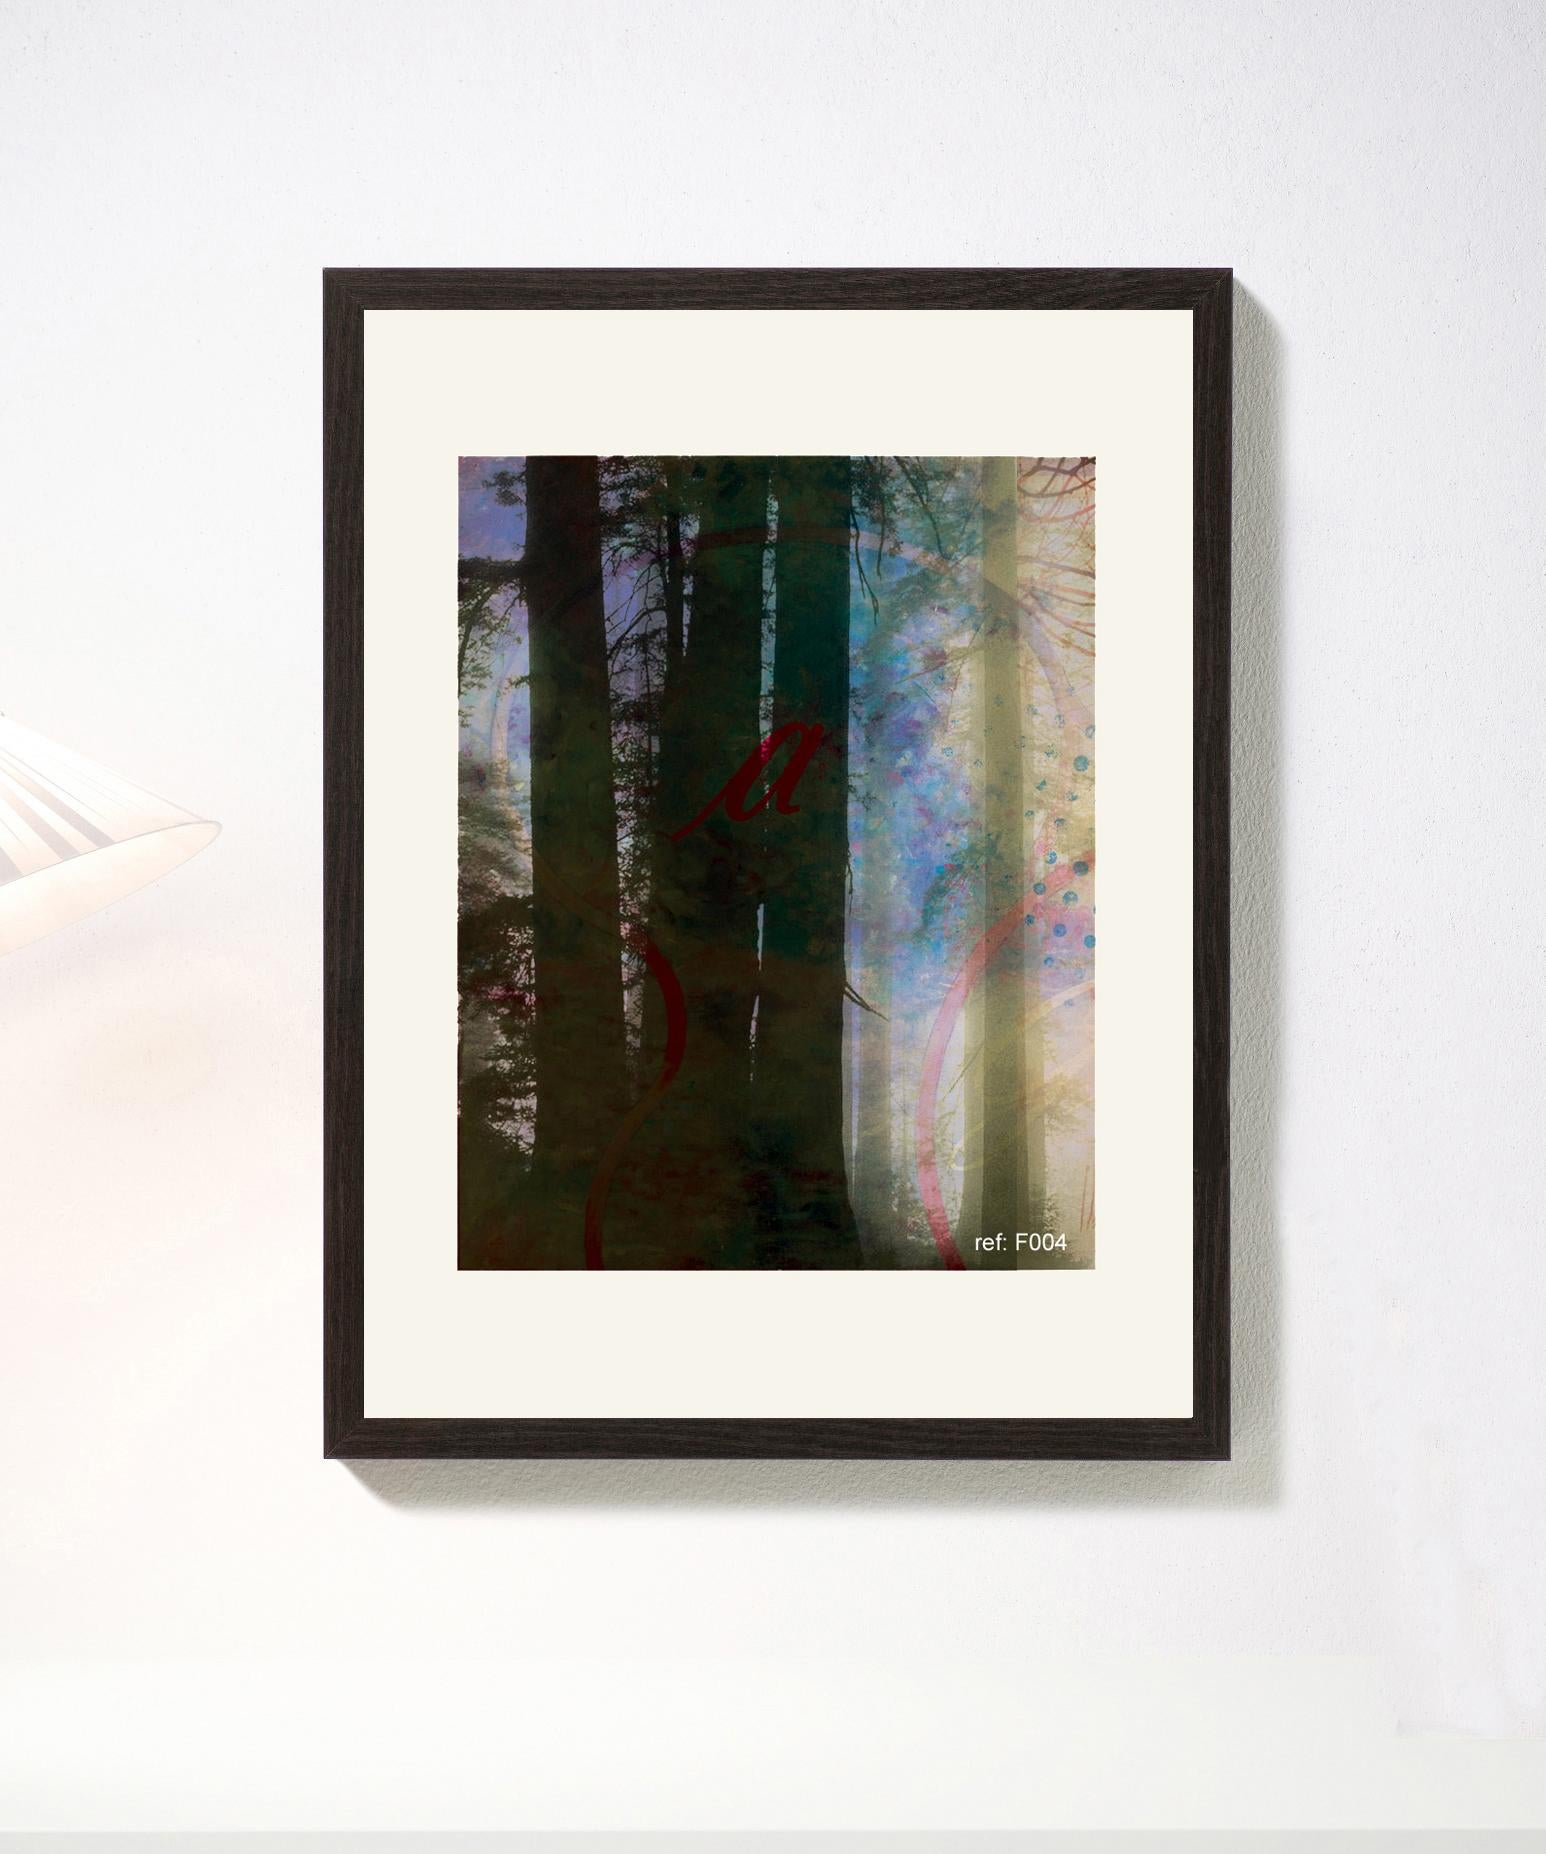 Forest XXIII - Contemporain, Abstrait, Moderne, Pop art, Surréaliste, Paysage - Print de Francisco Nicolás